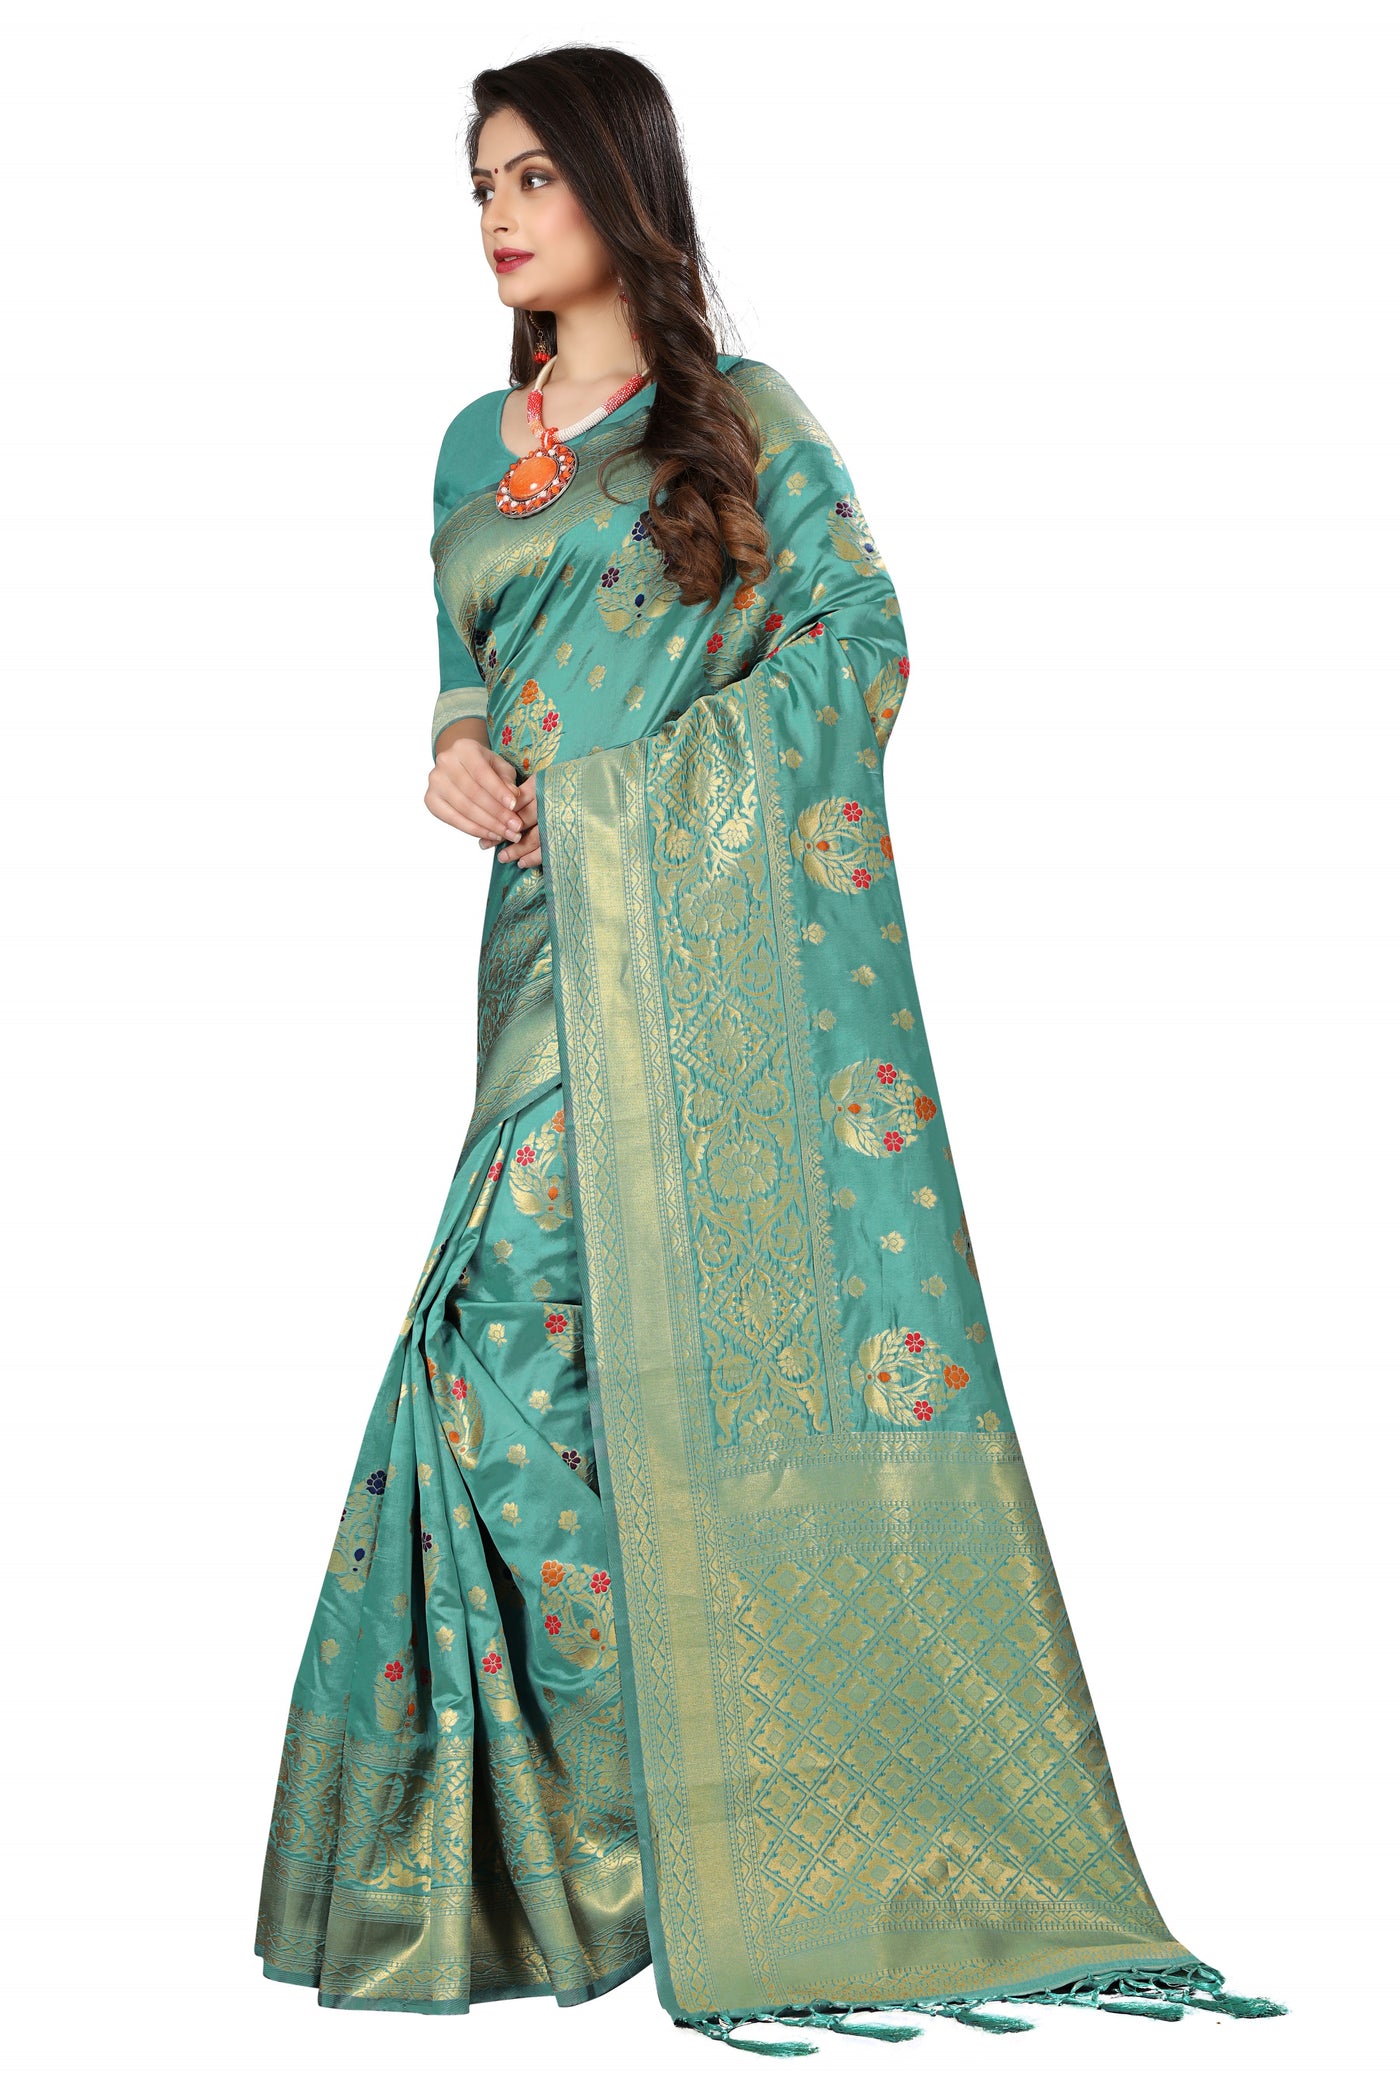 Banarasi Art Silk Green Saree With Blouse